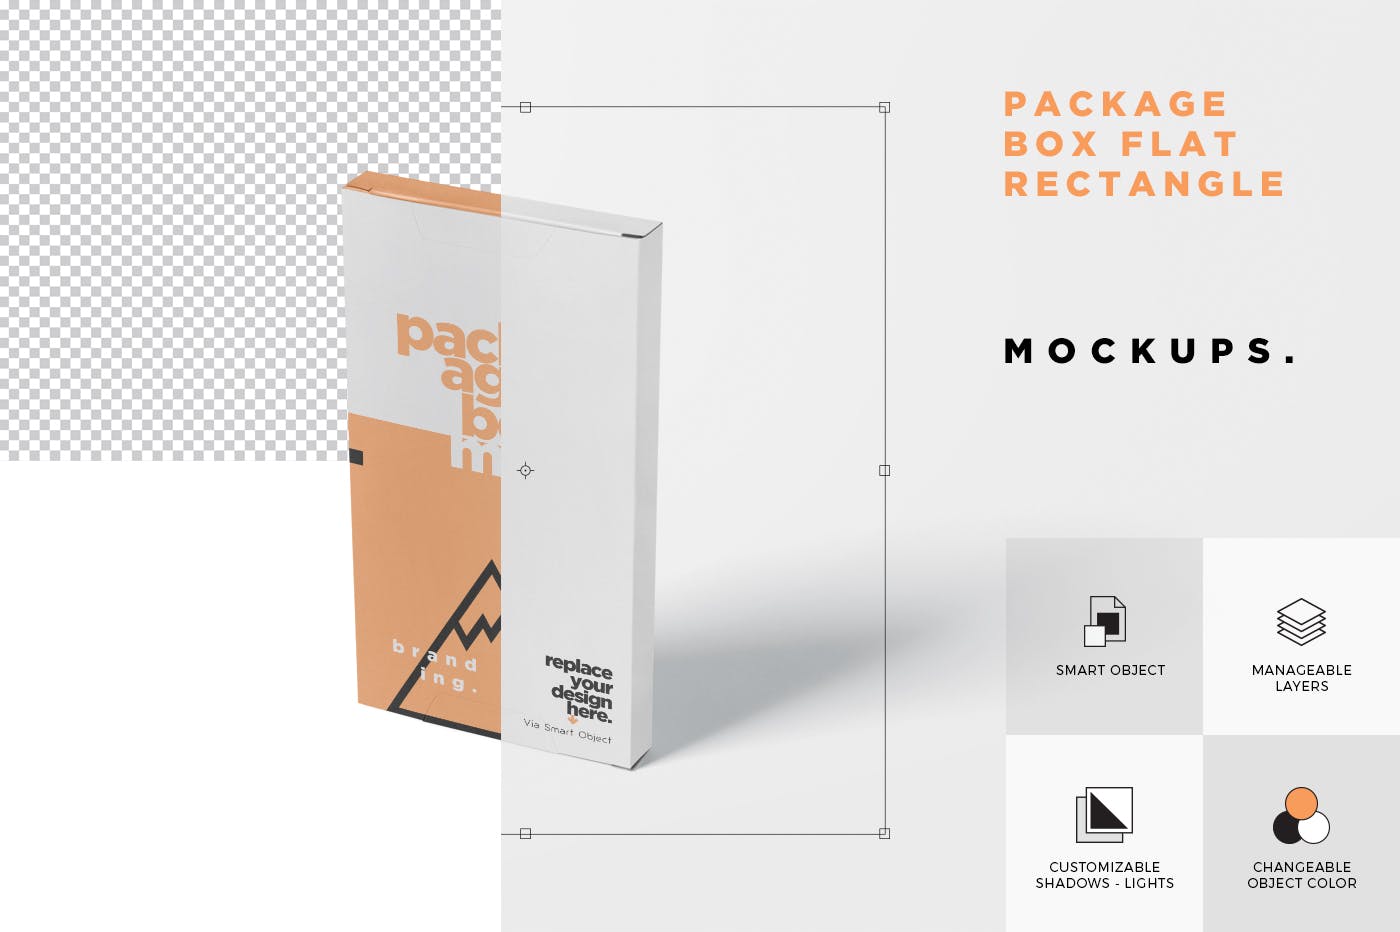 扁平矩形巧克力条/块包装盒外观设计样机 Package Box Mock-Up – Flat Rectangle Shape插图(4)